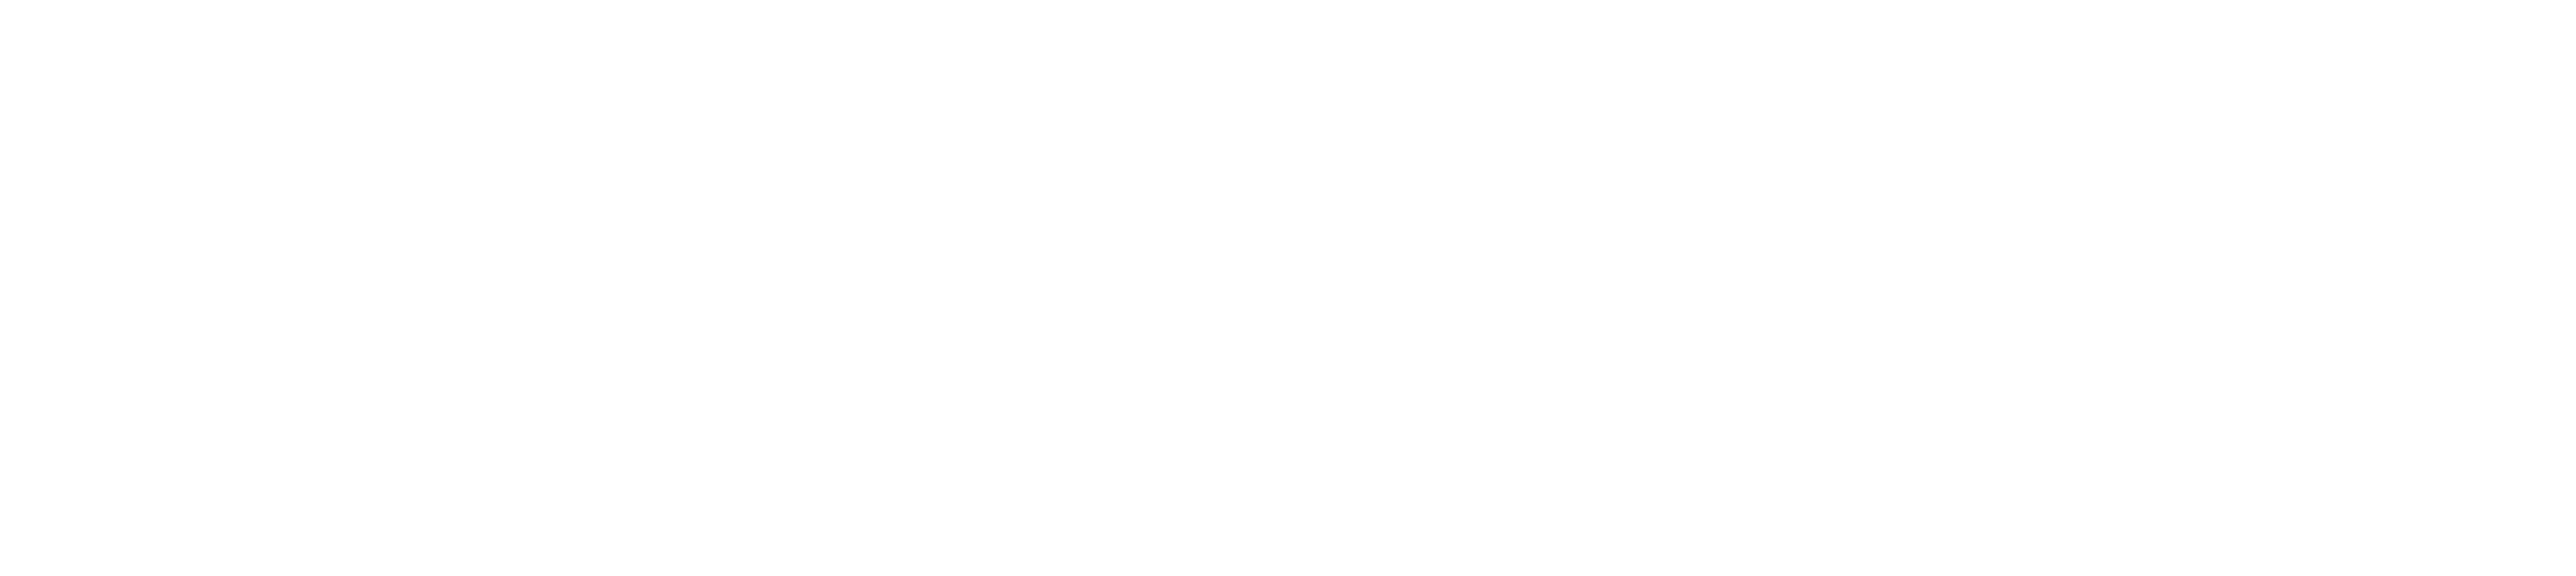 Loma.eco - Marktplatz für regionale Produkte Weißes Logo